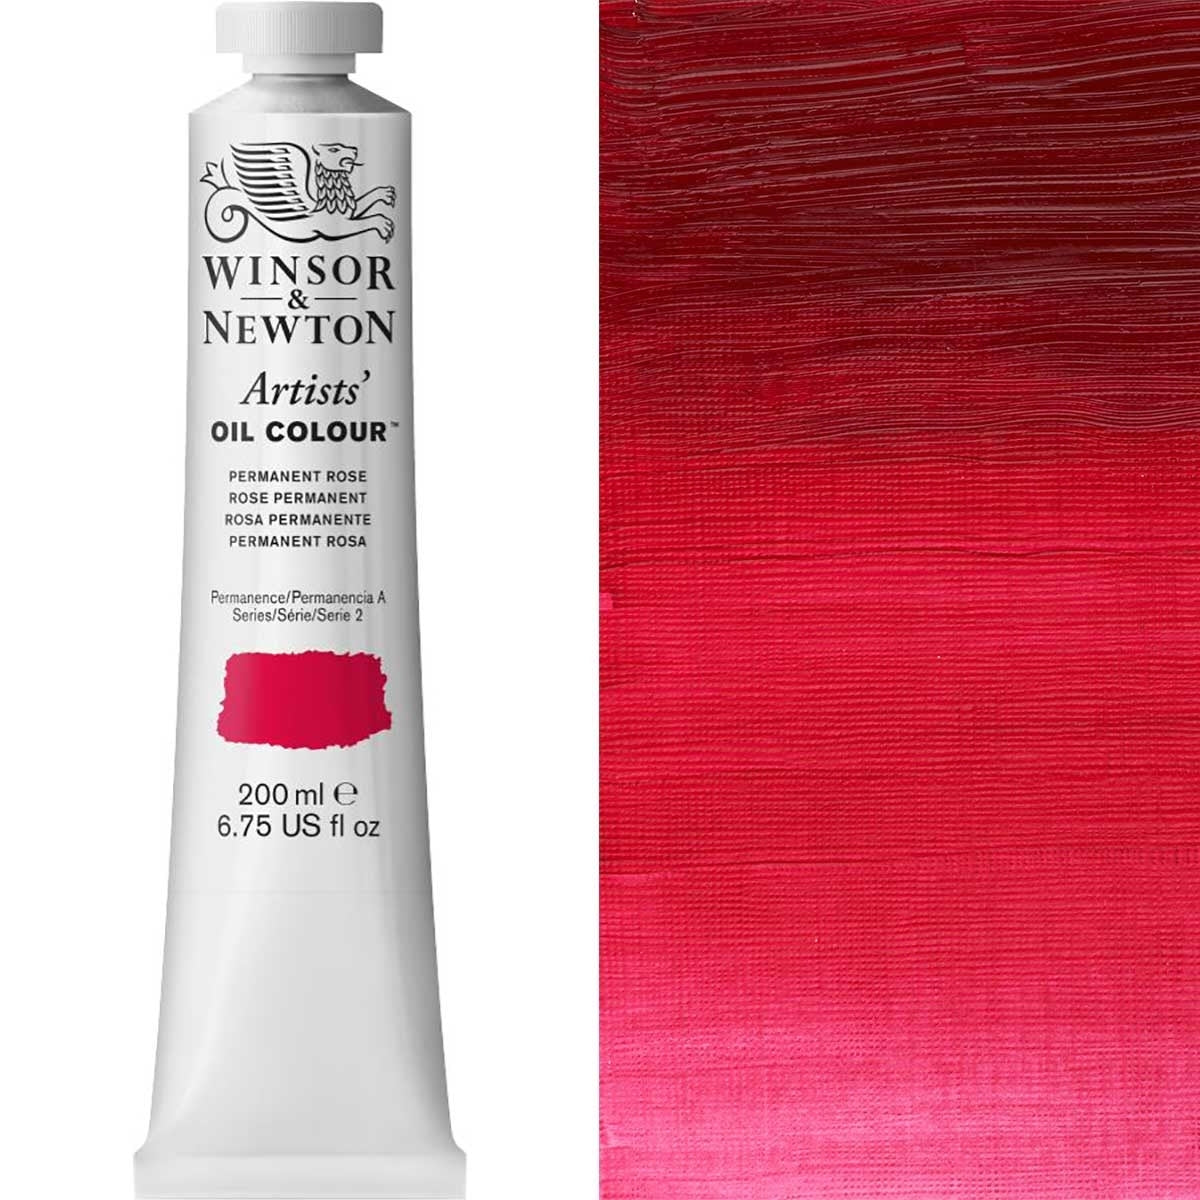 Winsor et Newton - Couleur d'huile des artistes - 200 ml - Rose permanente